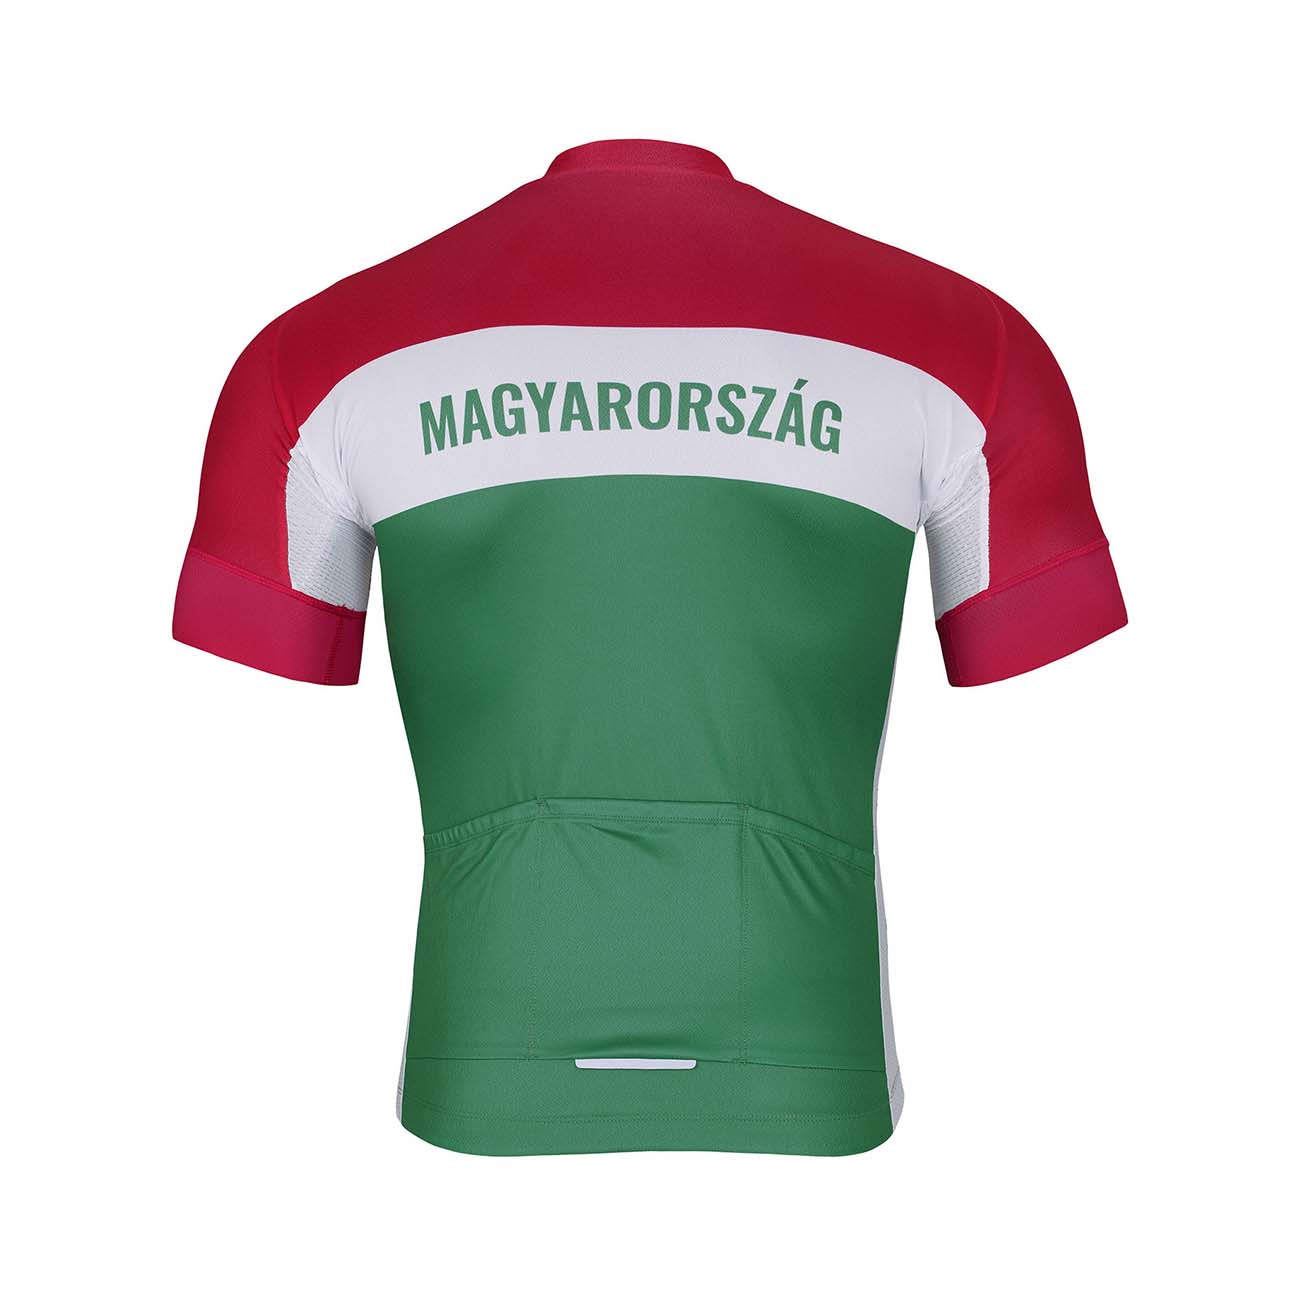 BONAVELO Krótka Koszulka Kolarska I Spodenki - HUNGARY - Zielony/czerwony/biały/czarny